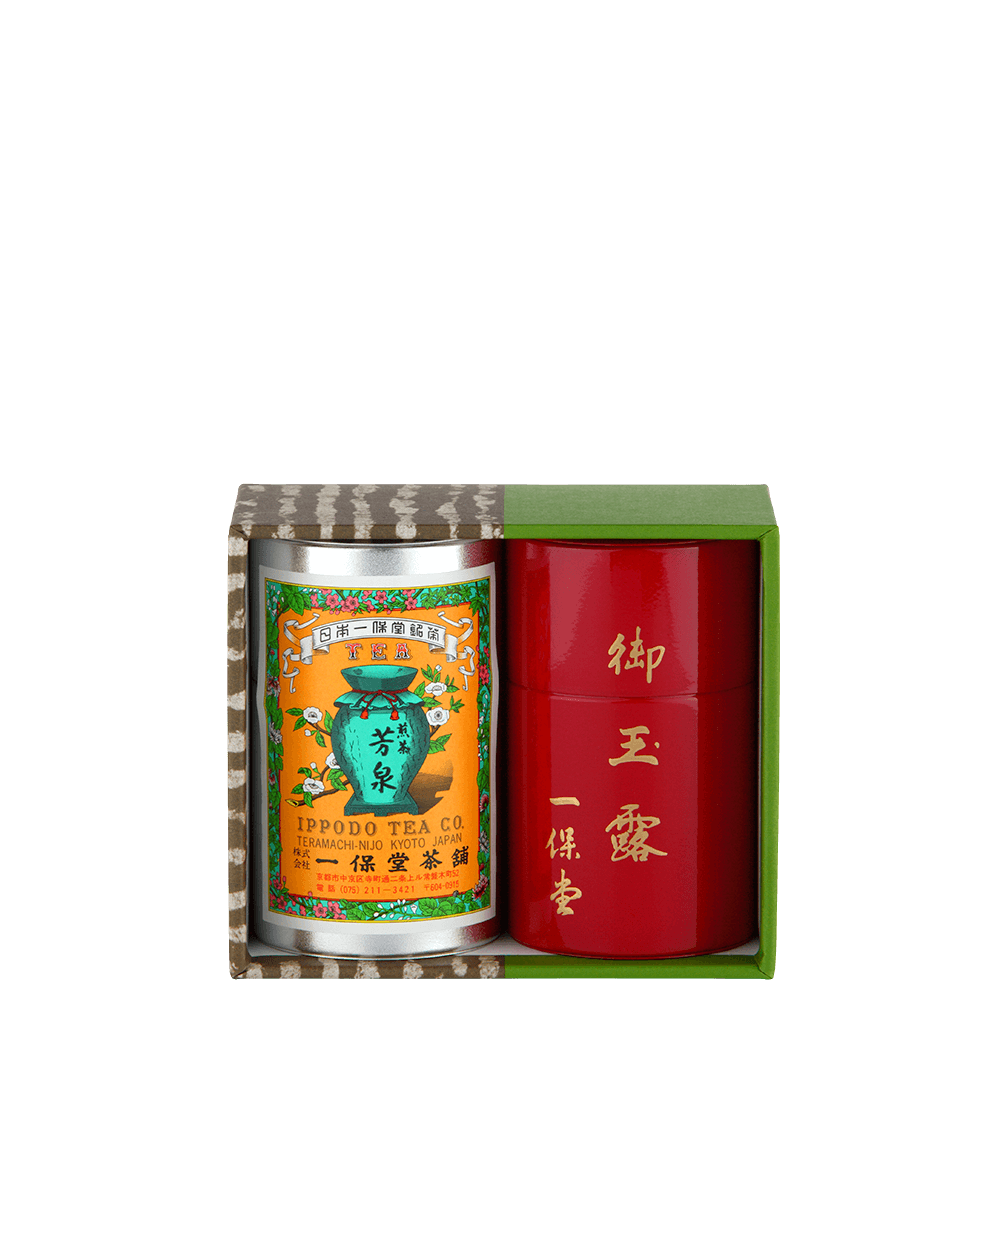 玉露 麟鳳・煎茶 芳泉 (小缶)